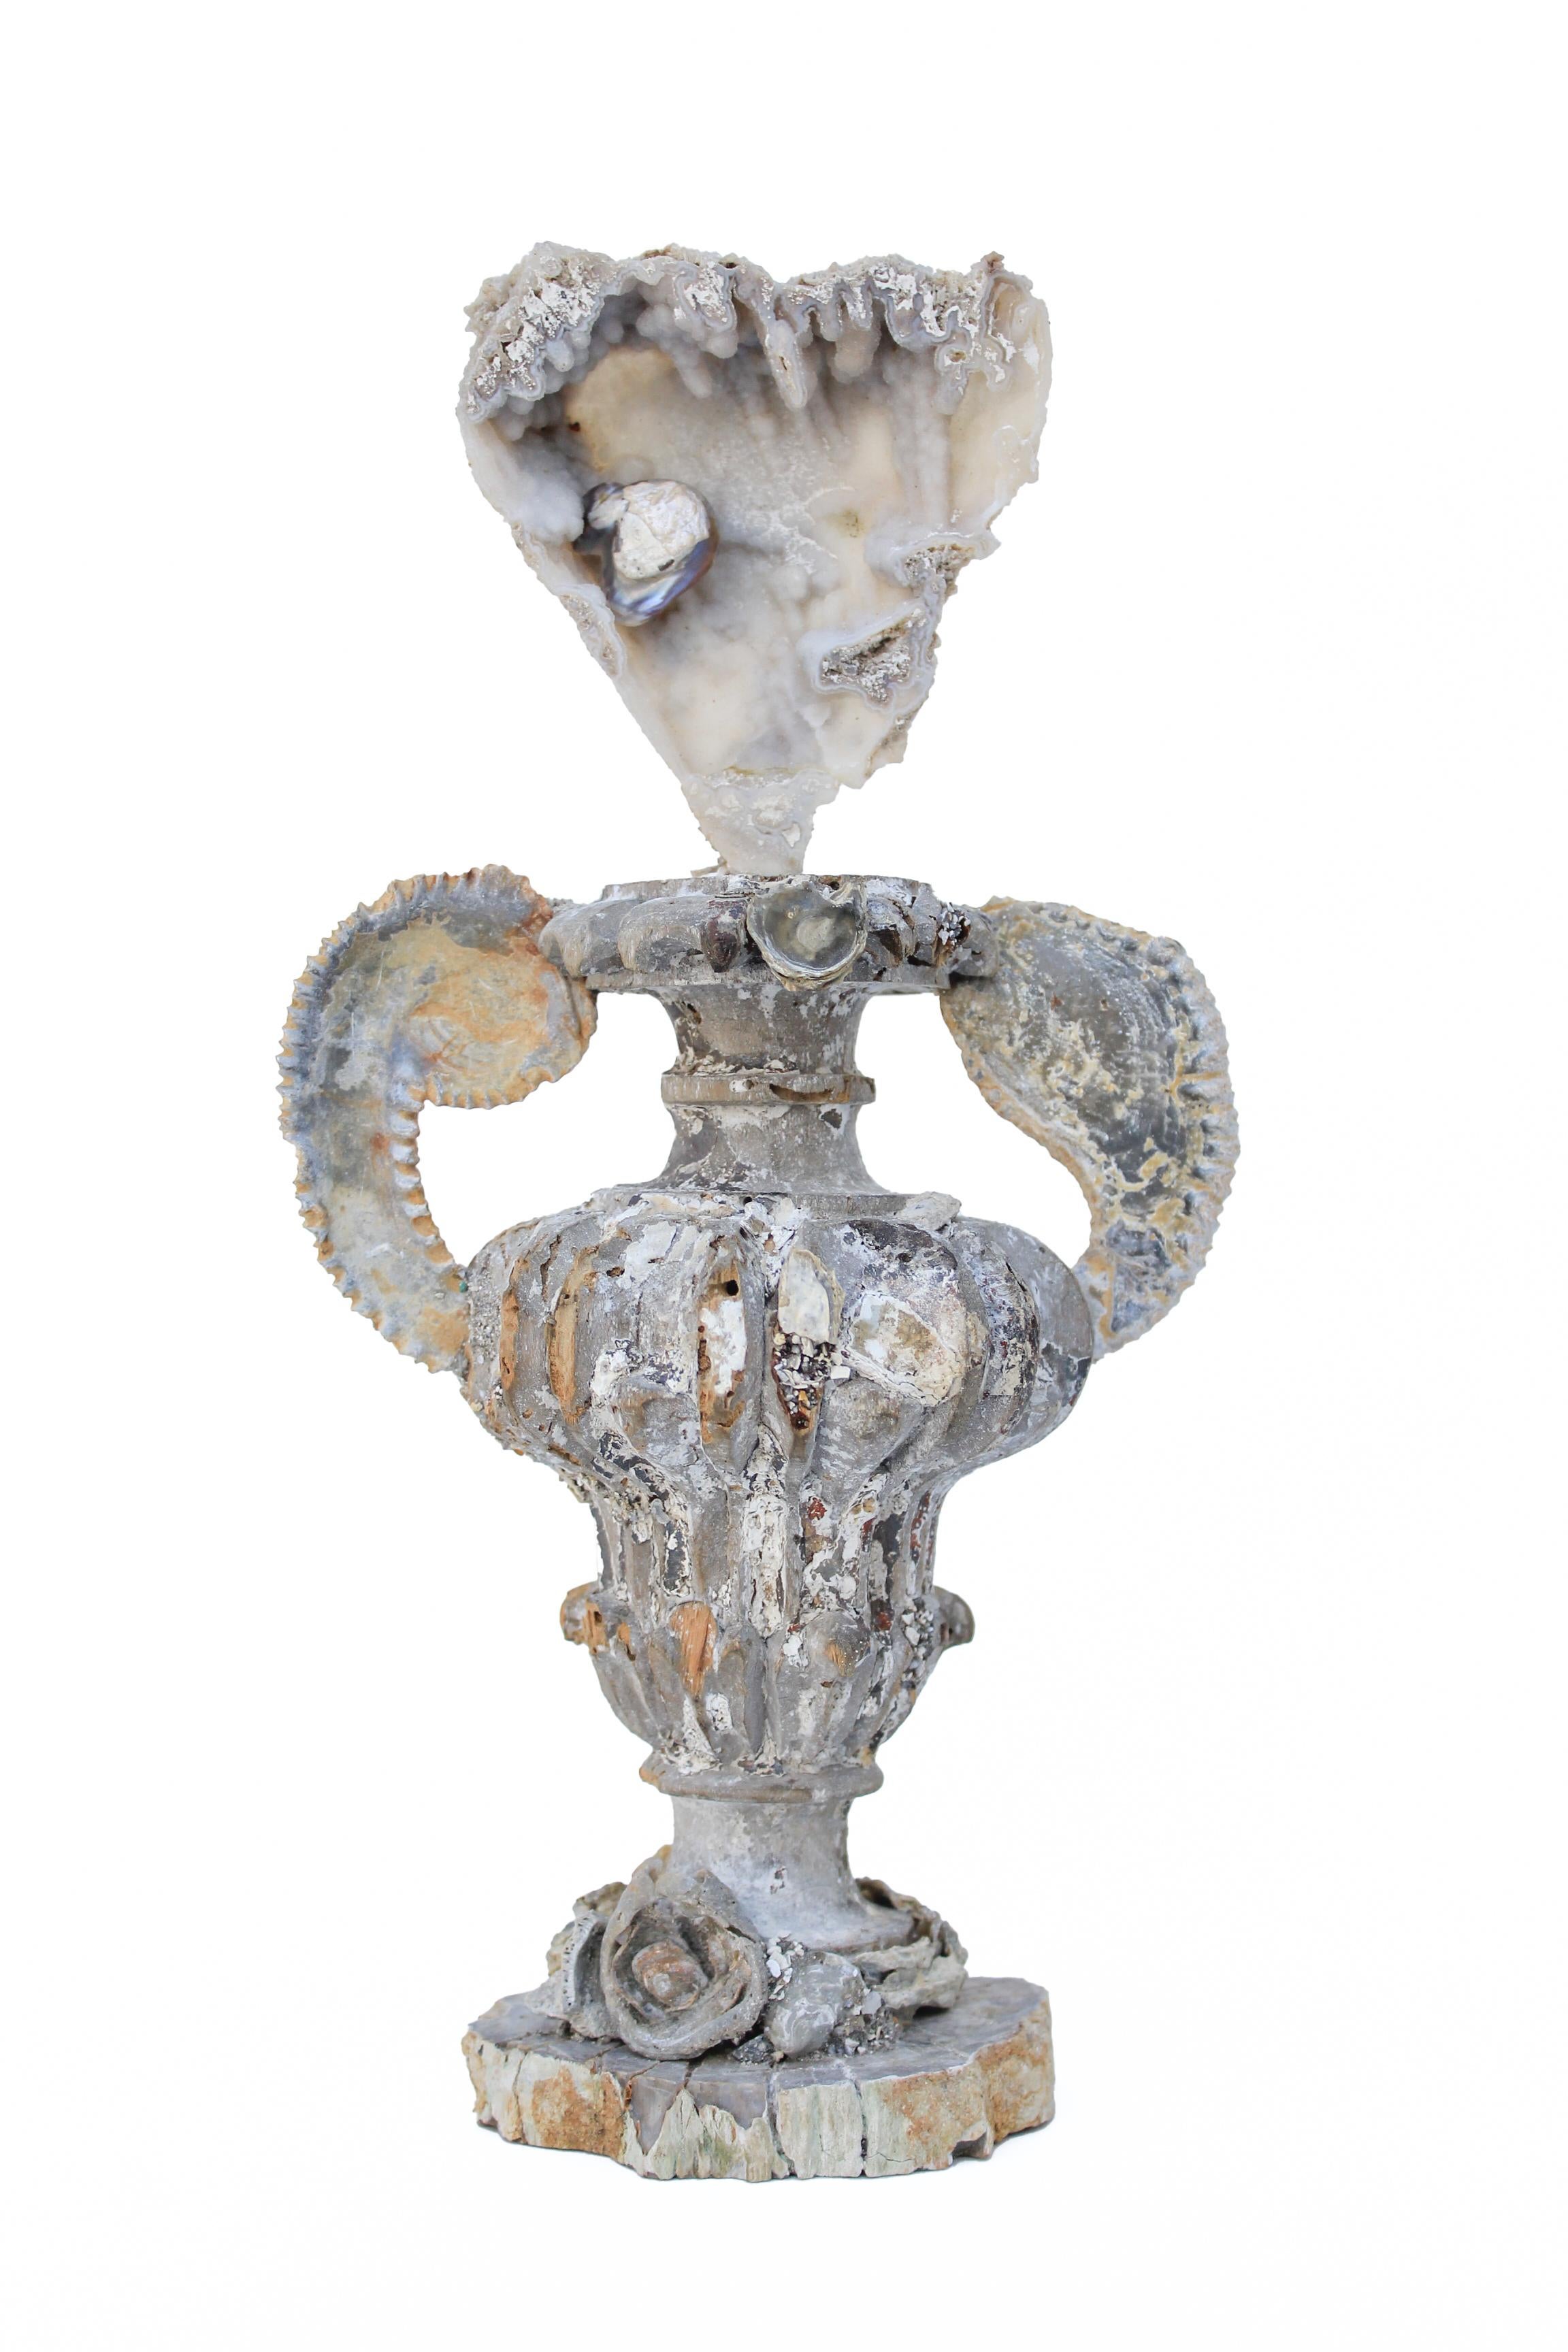 italienische Fragmentvase aus dem 17. oder 18. Jahrhundert mit Achatkoralle, zickzackförmigen fossilen Austernarmen, fossilen Muscheln und einer Barockperle auf einem Sockel aus poliertem versteinertem Holz.

Dieses Fragment stammt aus einer